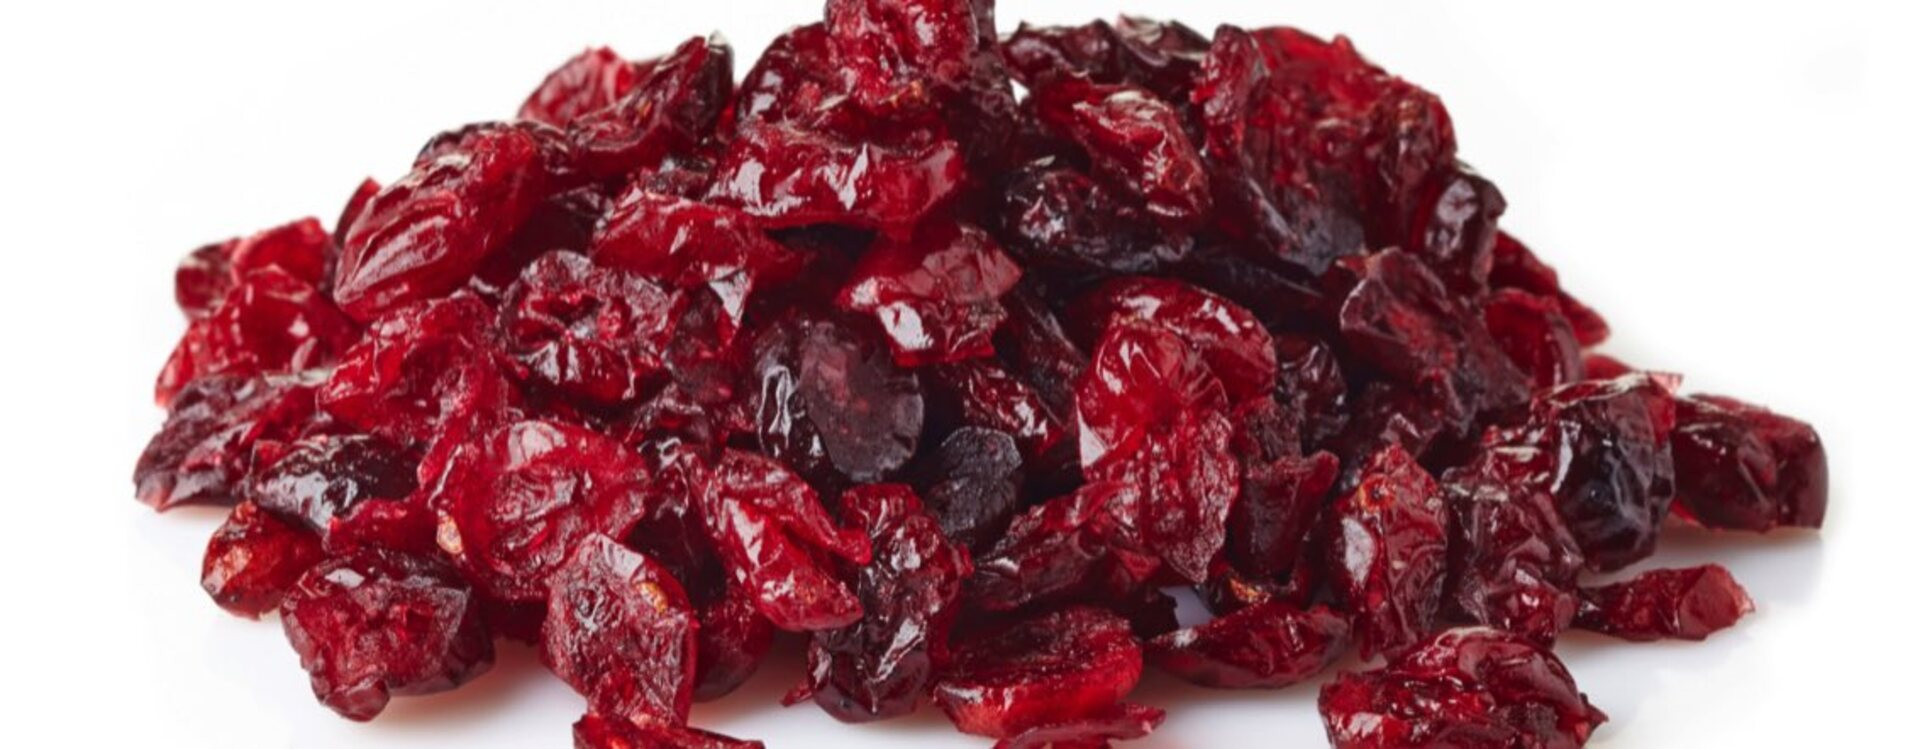 Tout savoir sur la récolte de la cranberry au Canada